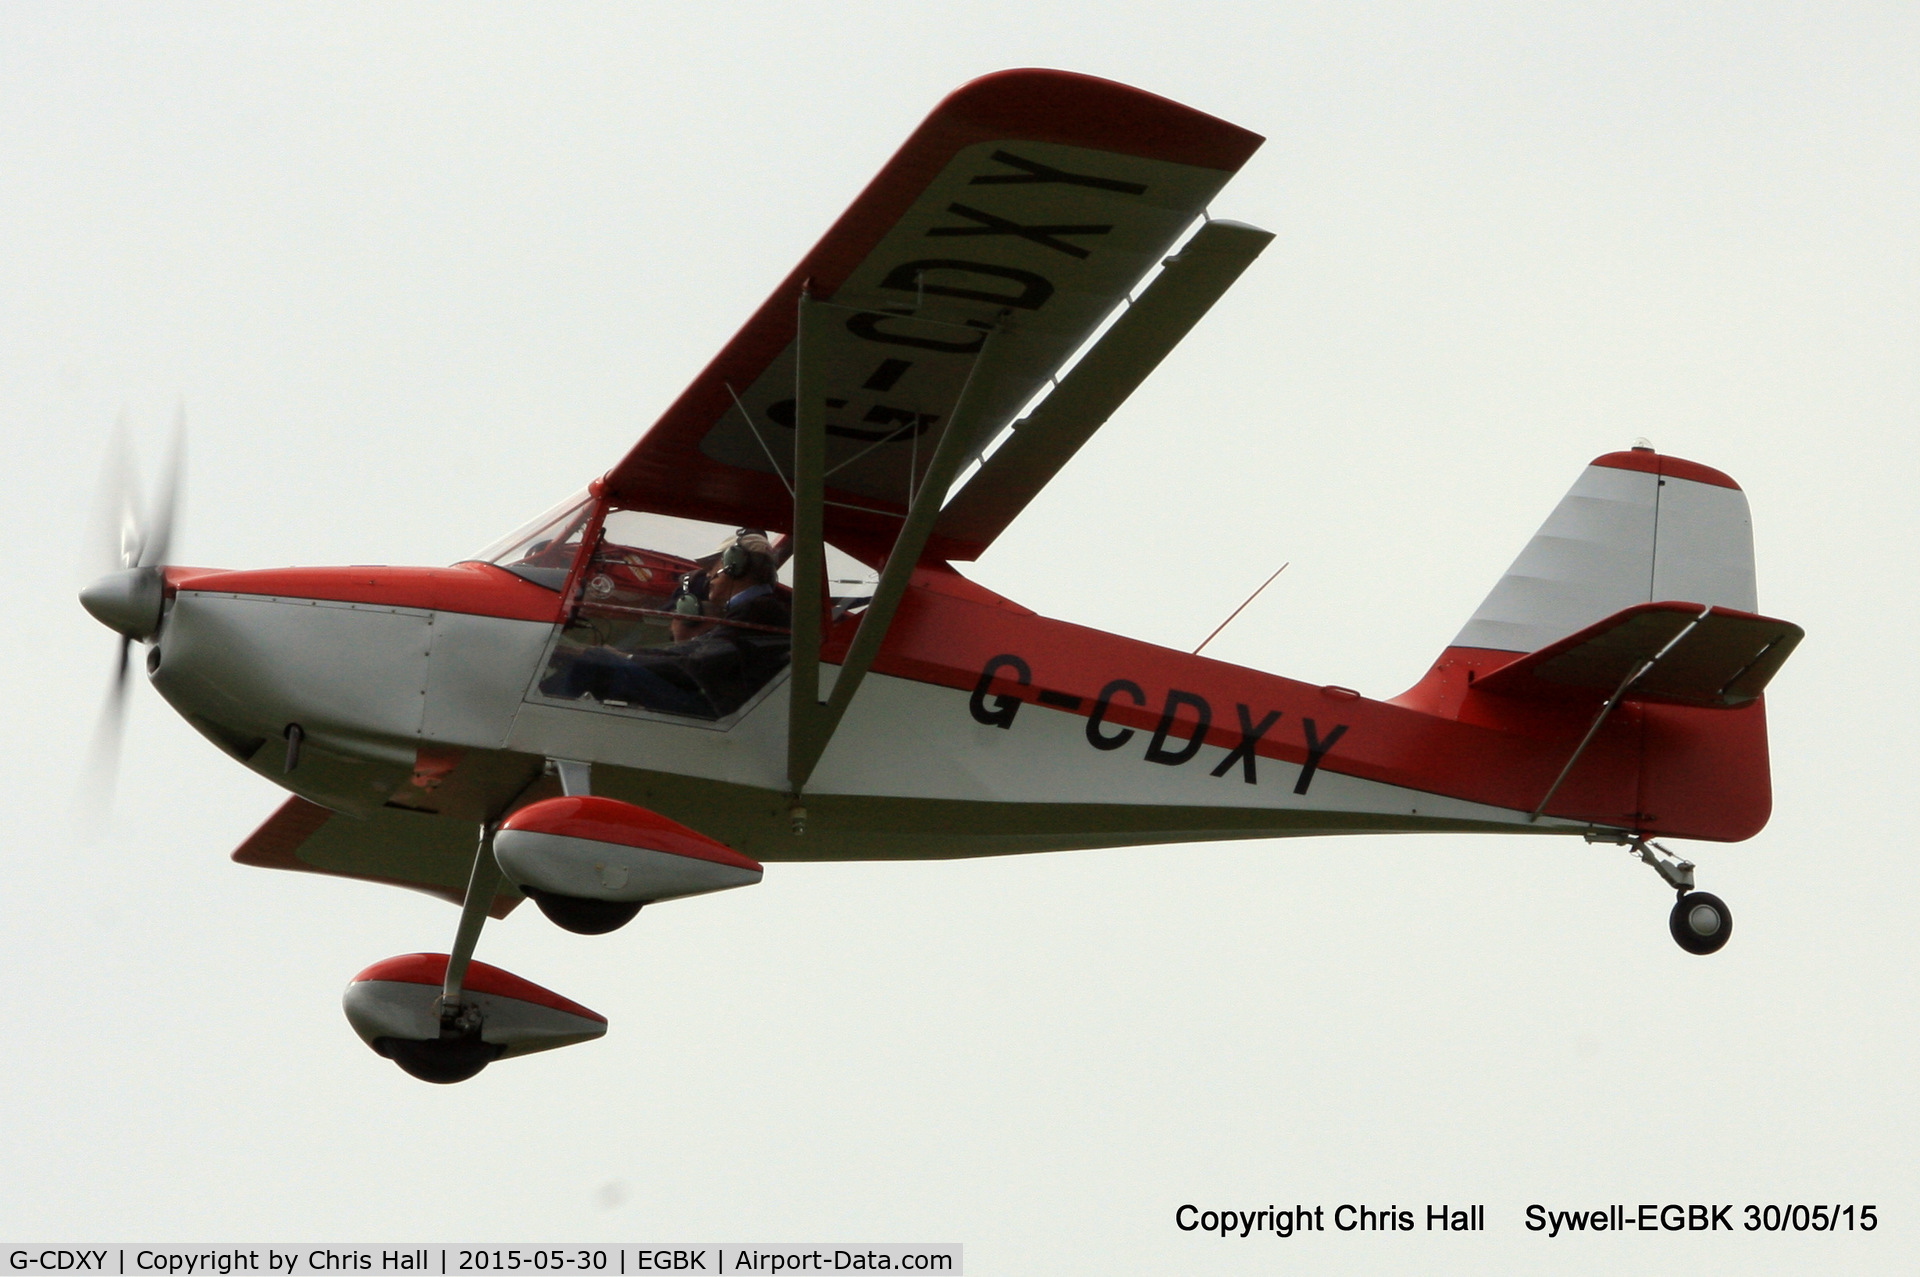 G-CDXY, 2007 Skystar Kitfox Series 7 C/N PFA 172D-14112, at Aeroexpo 2015